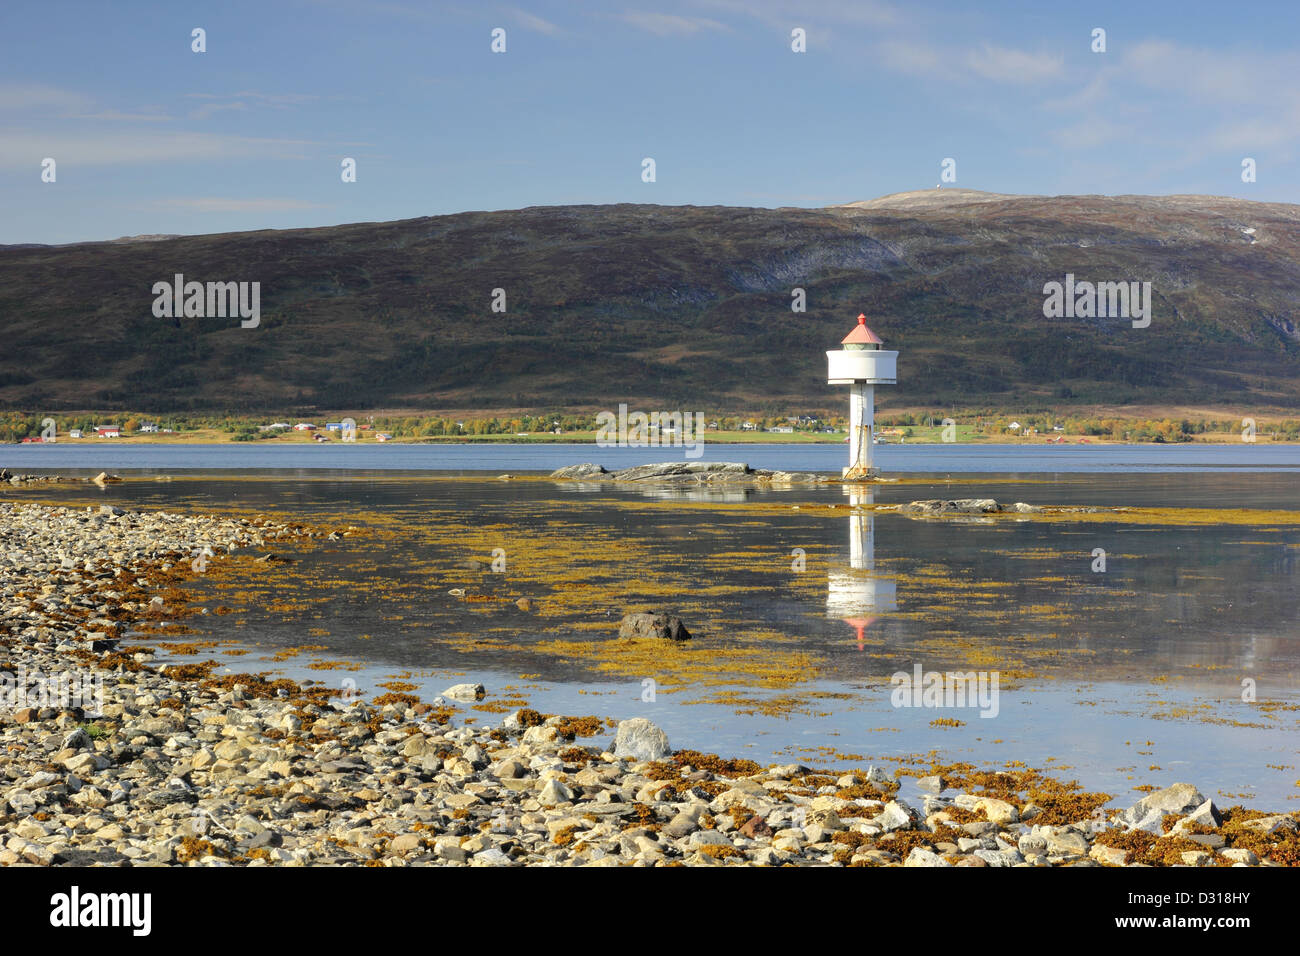 Little White Lighthouse vicino a riva nei fiordi norvegesi Foto Stock